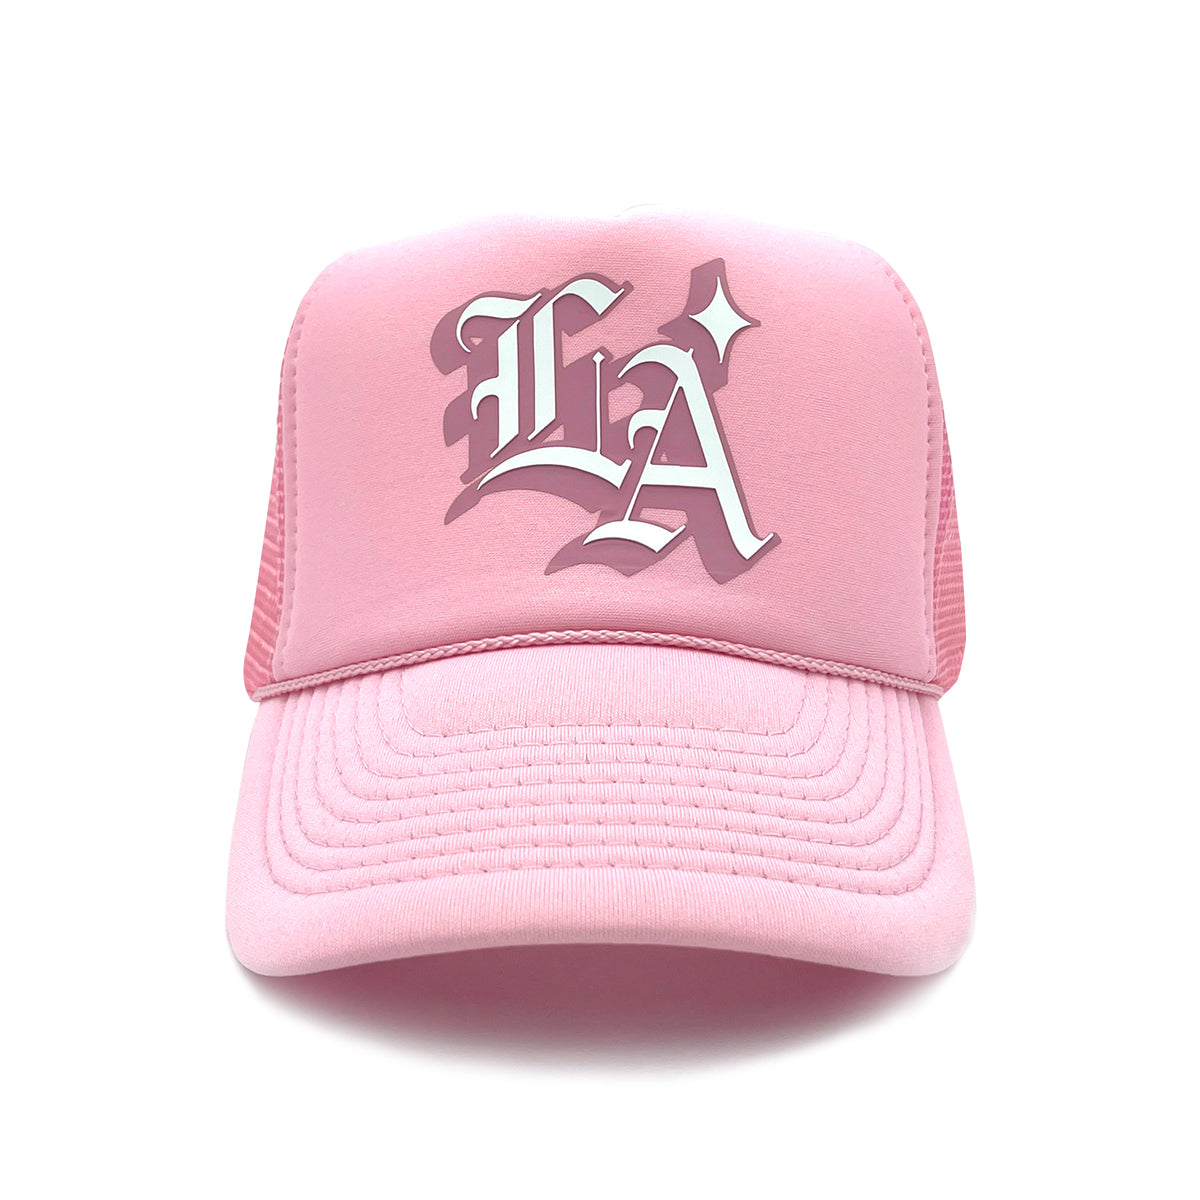 OG L.A. Trucker Hat (Pink) – Product of LA